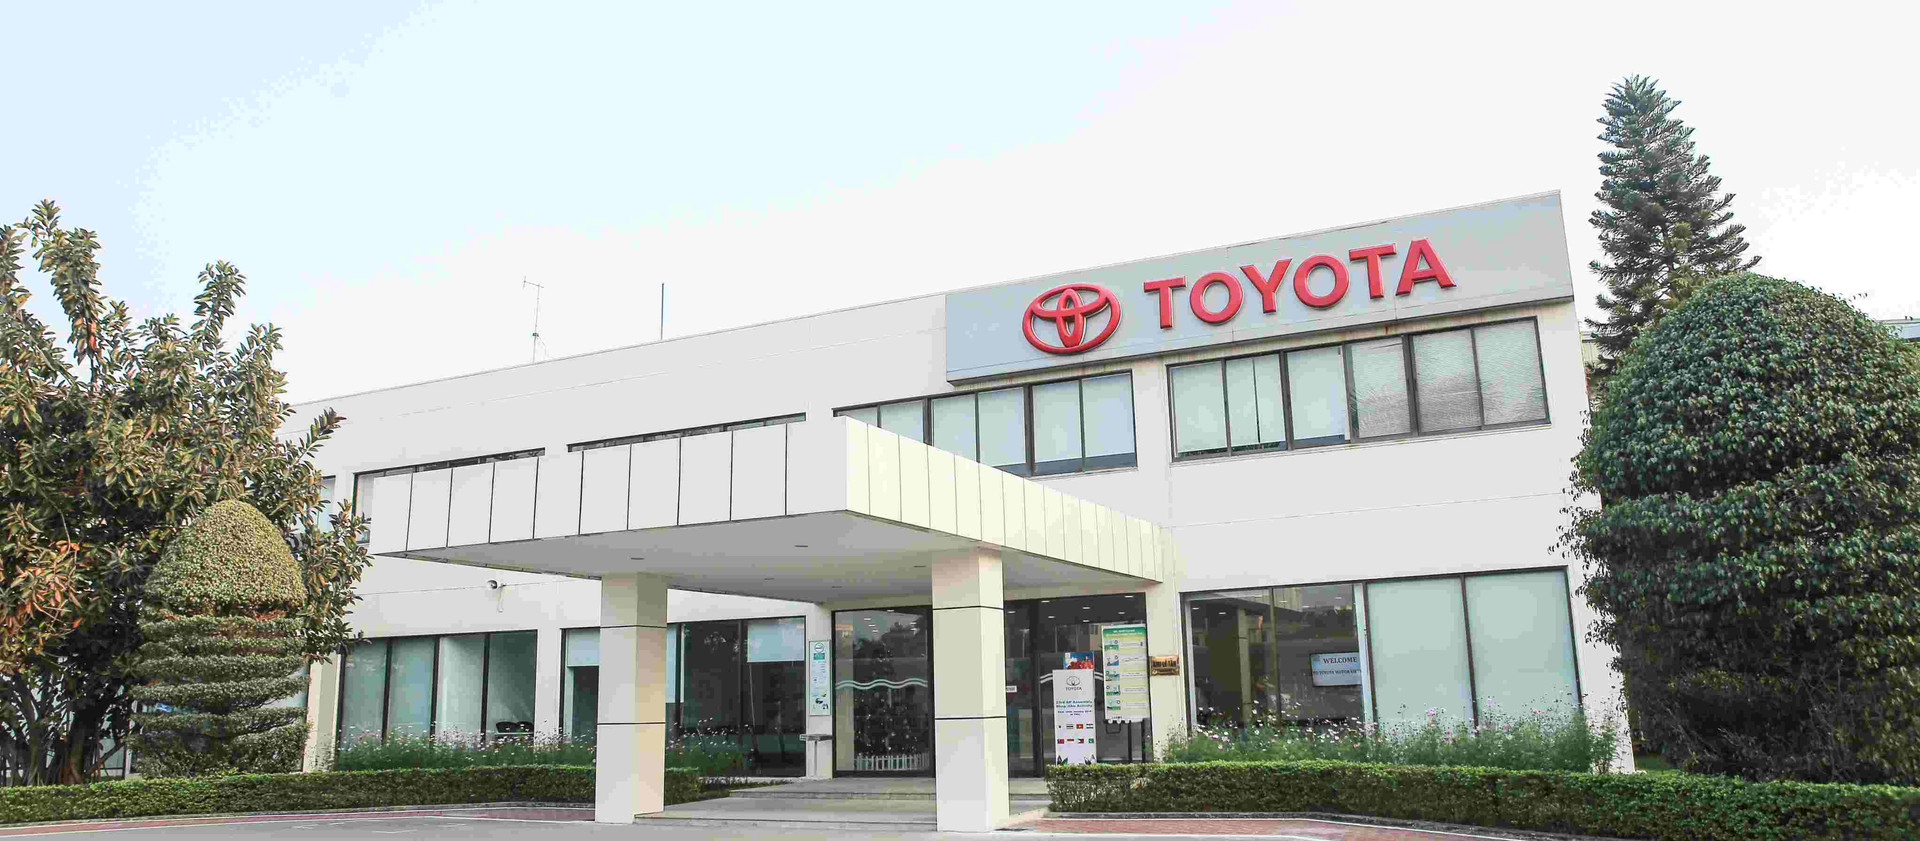 Giới thiệu công ty Toyota Việt Nam: Sản phẩm và dịch vụ sau bán hàng